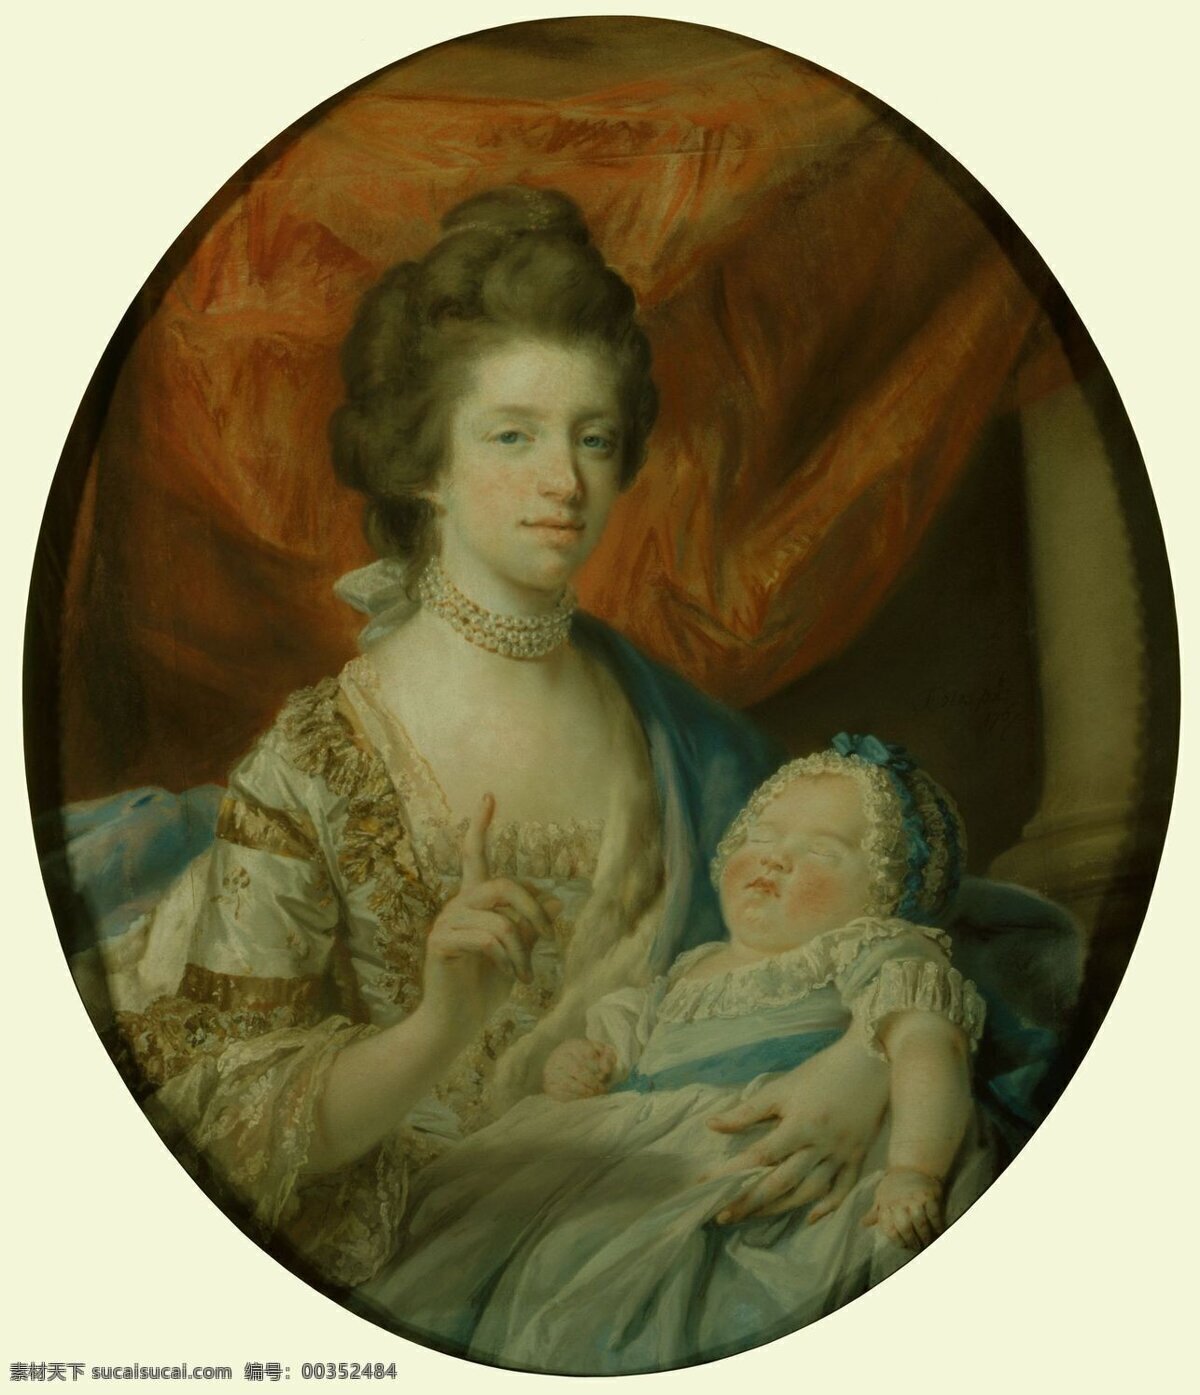 绘画书法 文化艺术 夏洛特 王后 长女 公主 设计素材 模板下载 英国王后 夏洛特公主 乔治三世 19世纪油画 家居装饰素材